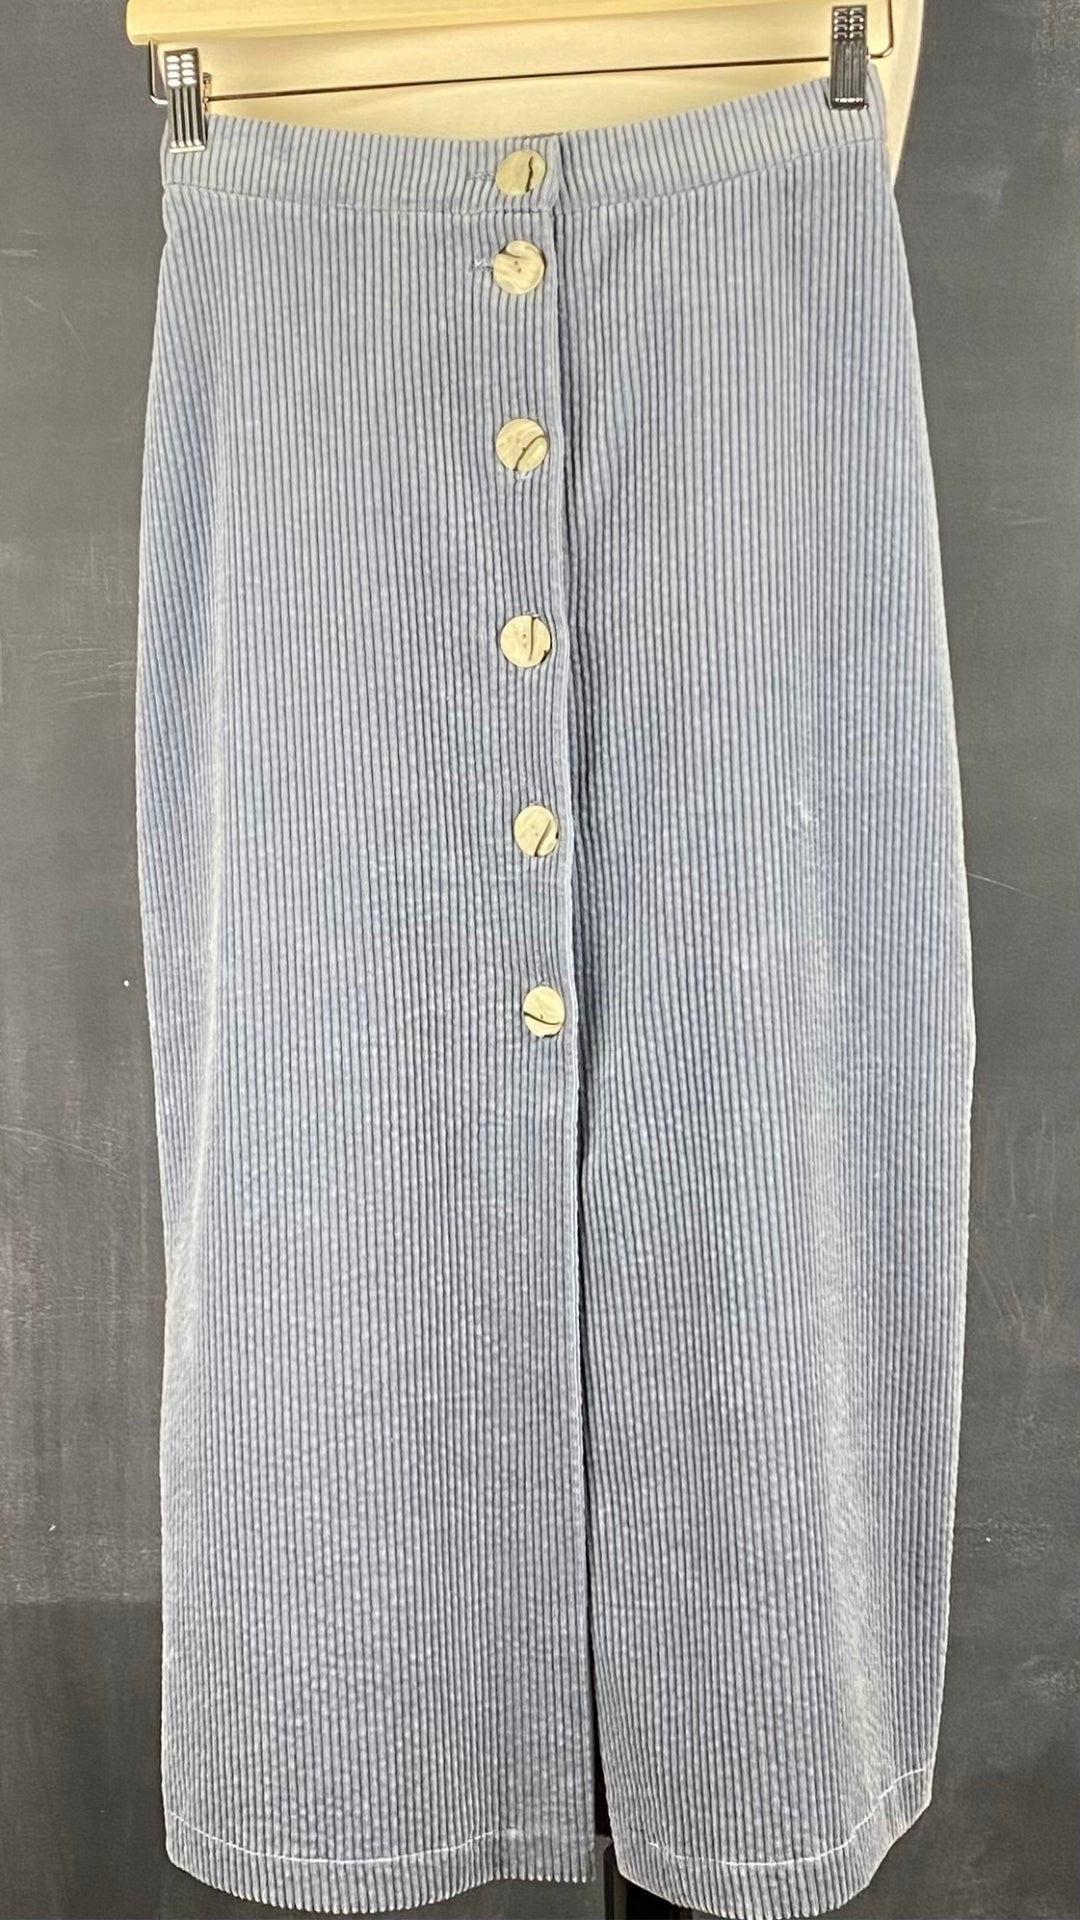 Jupe midi boutonnée gris-bleu en velours côtelé Essentiels &Co, taille small (xs). Vue de face.